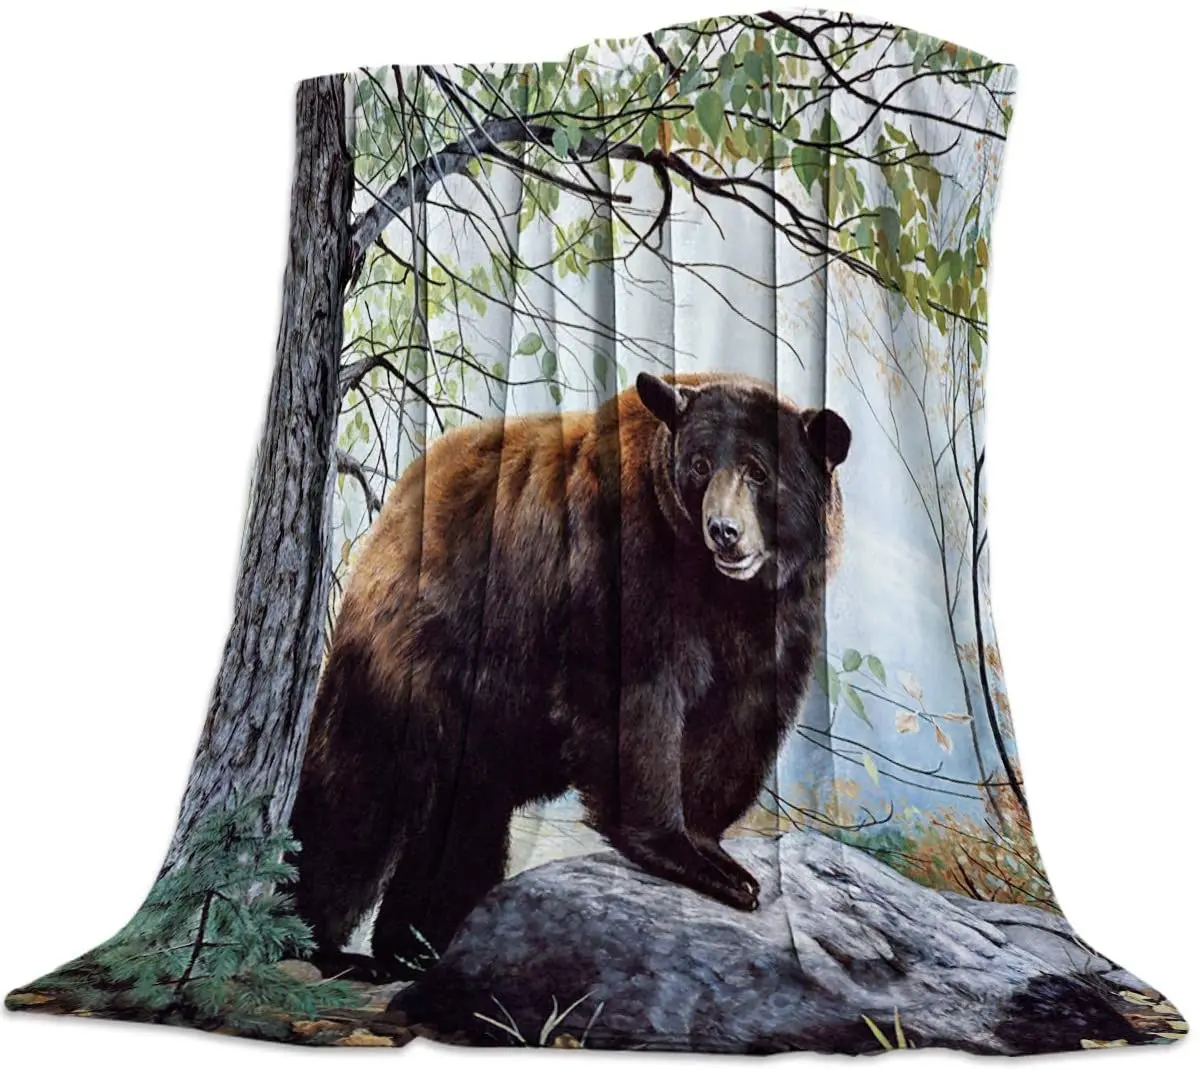 

Флисовое одеяло и шикарное роскошное ворсистое одеяло для кровати, милое животное с медведем на дереве, мягкое легкое искусственное одеяло